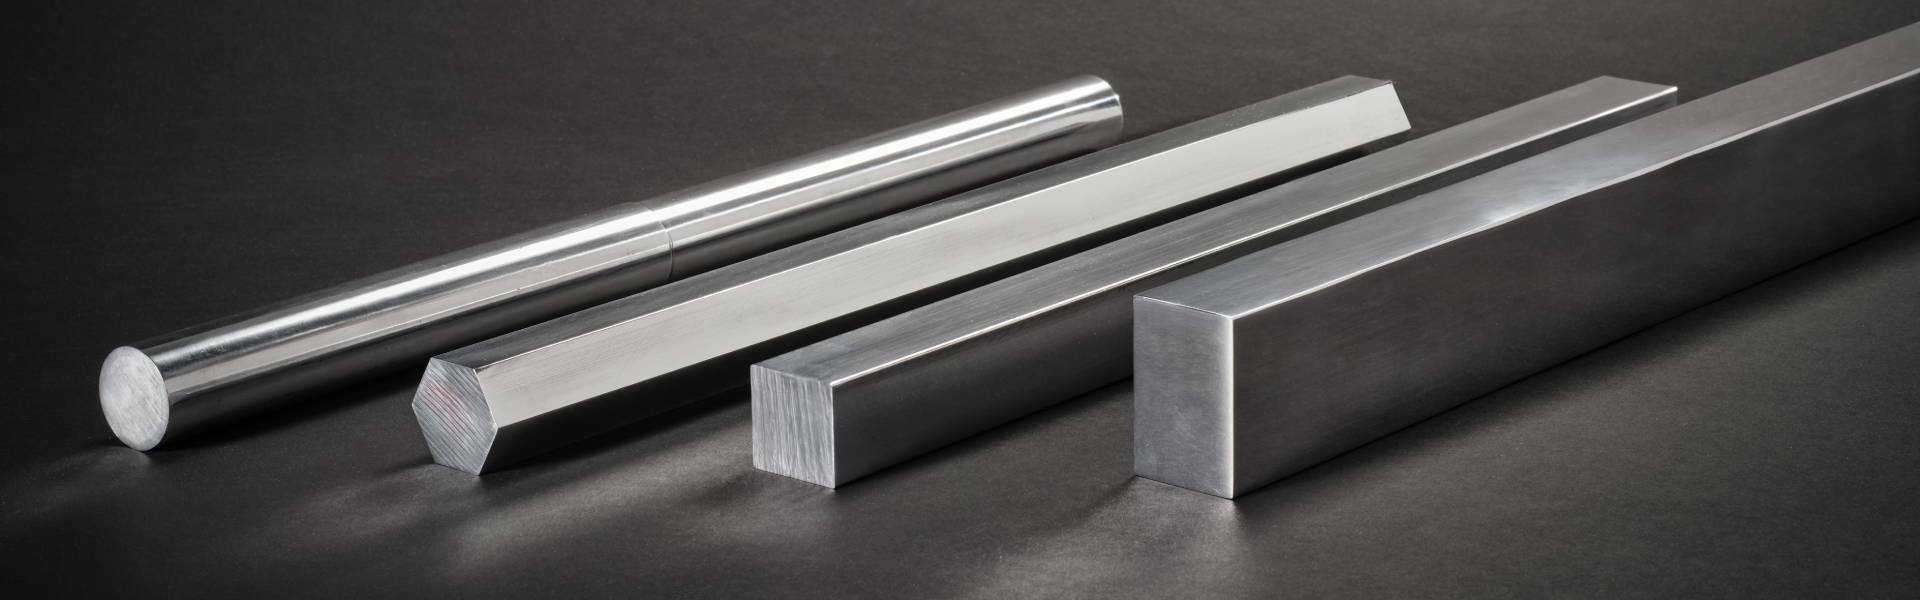 Barre - Vendita alluminio: profili, tubi, lastre e barre alluminio.